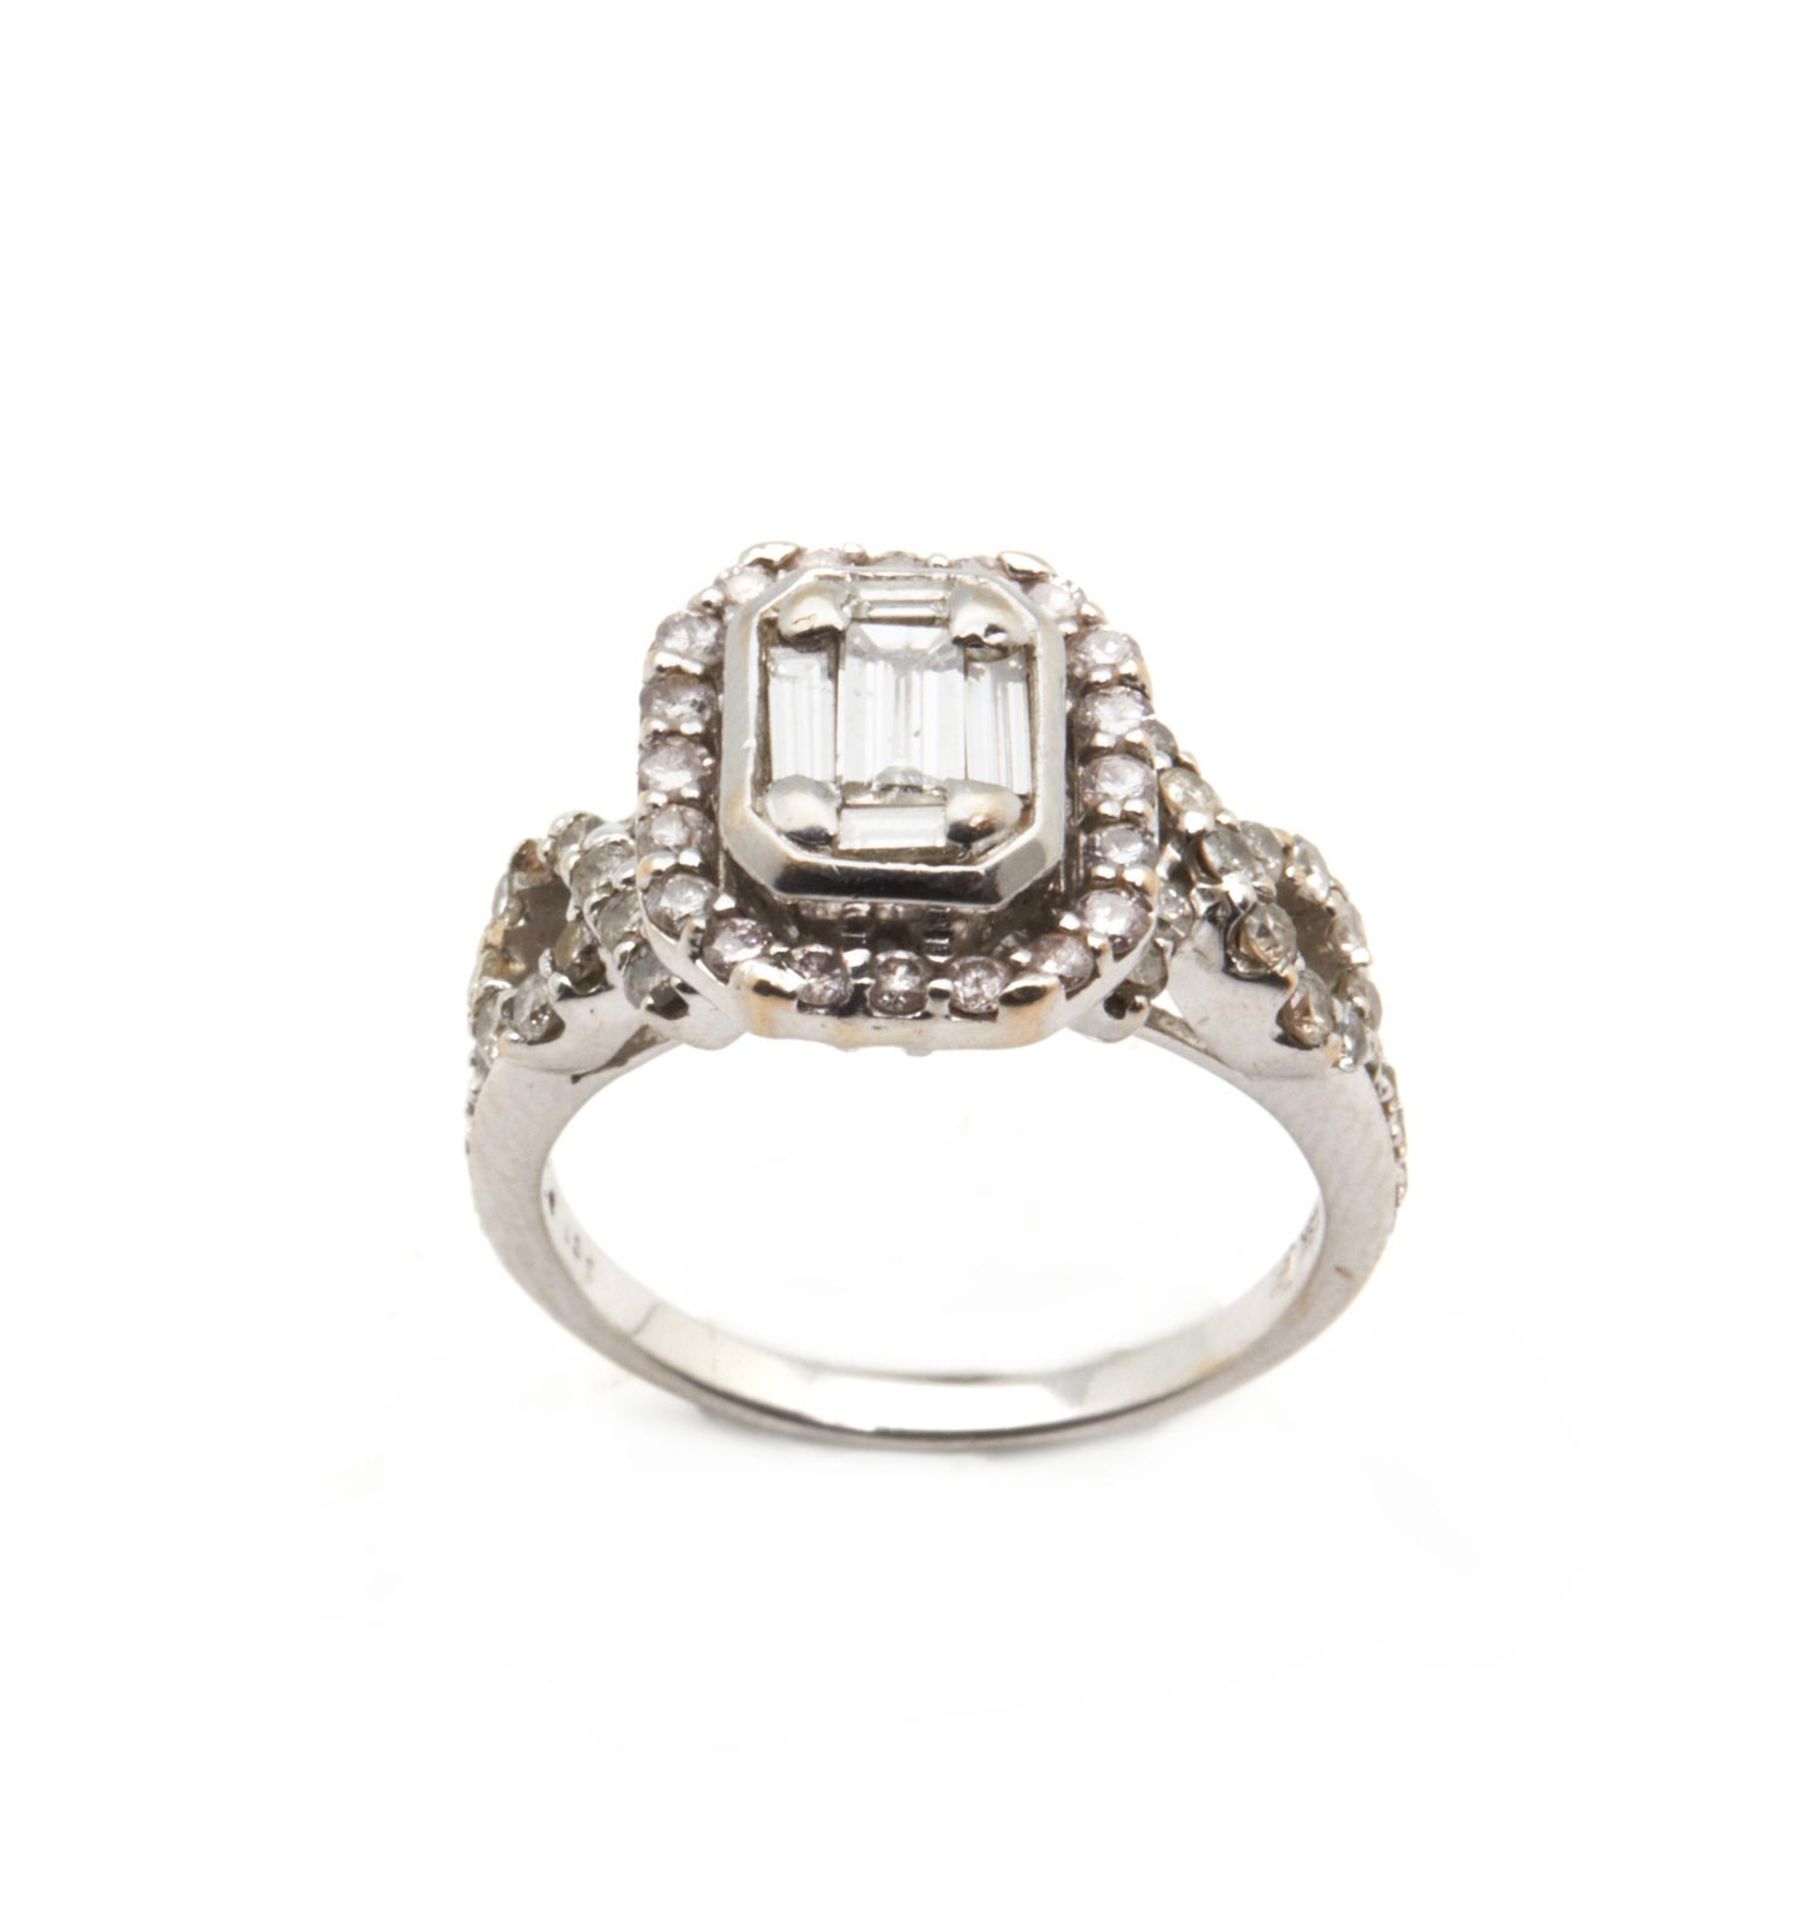 RING En oro blanco con diamantes talla brillante y circonita.